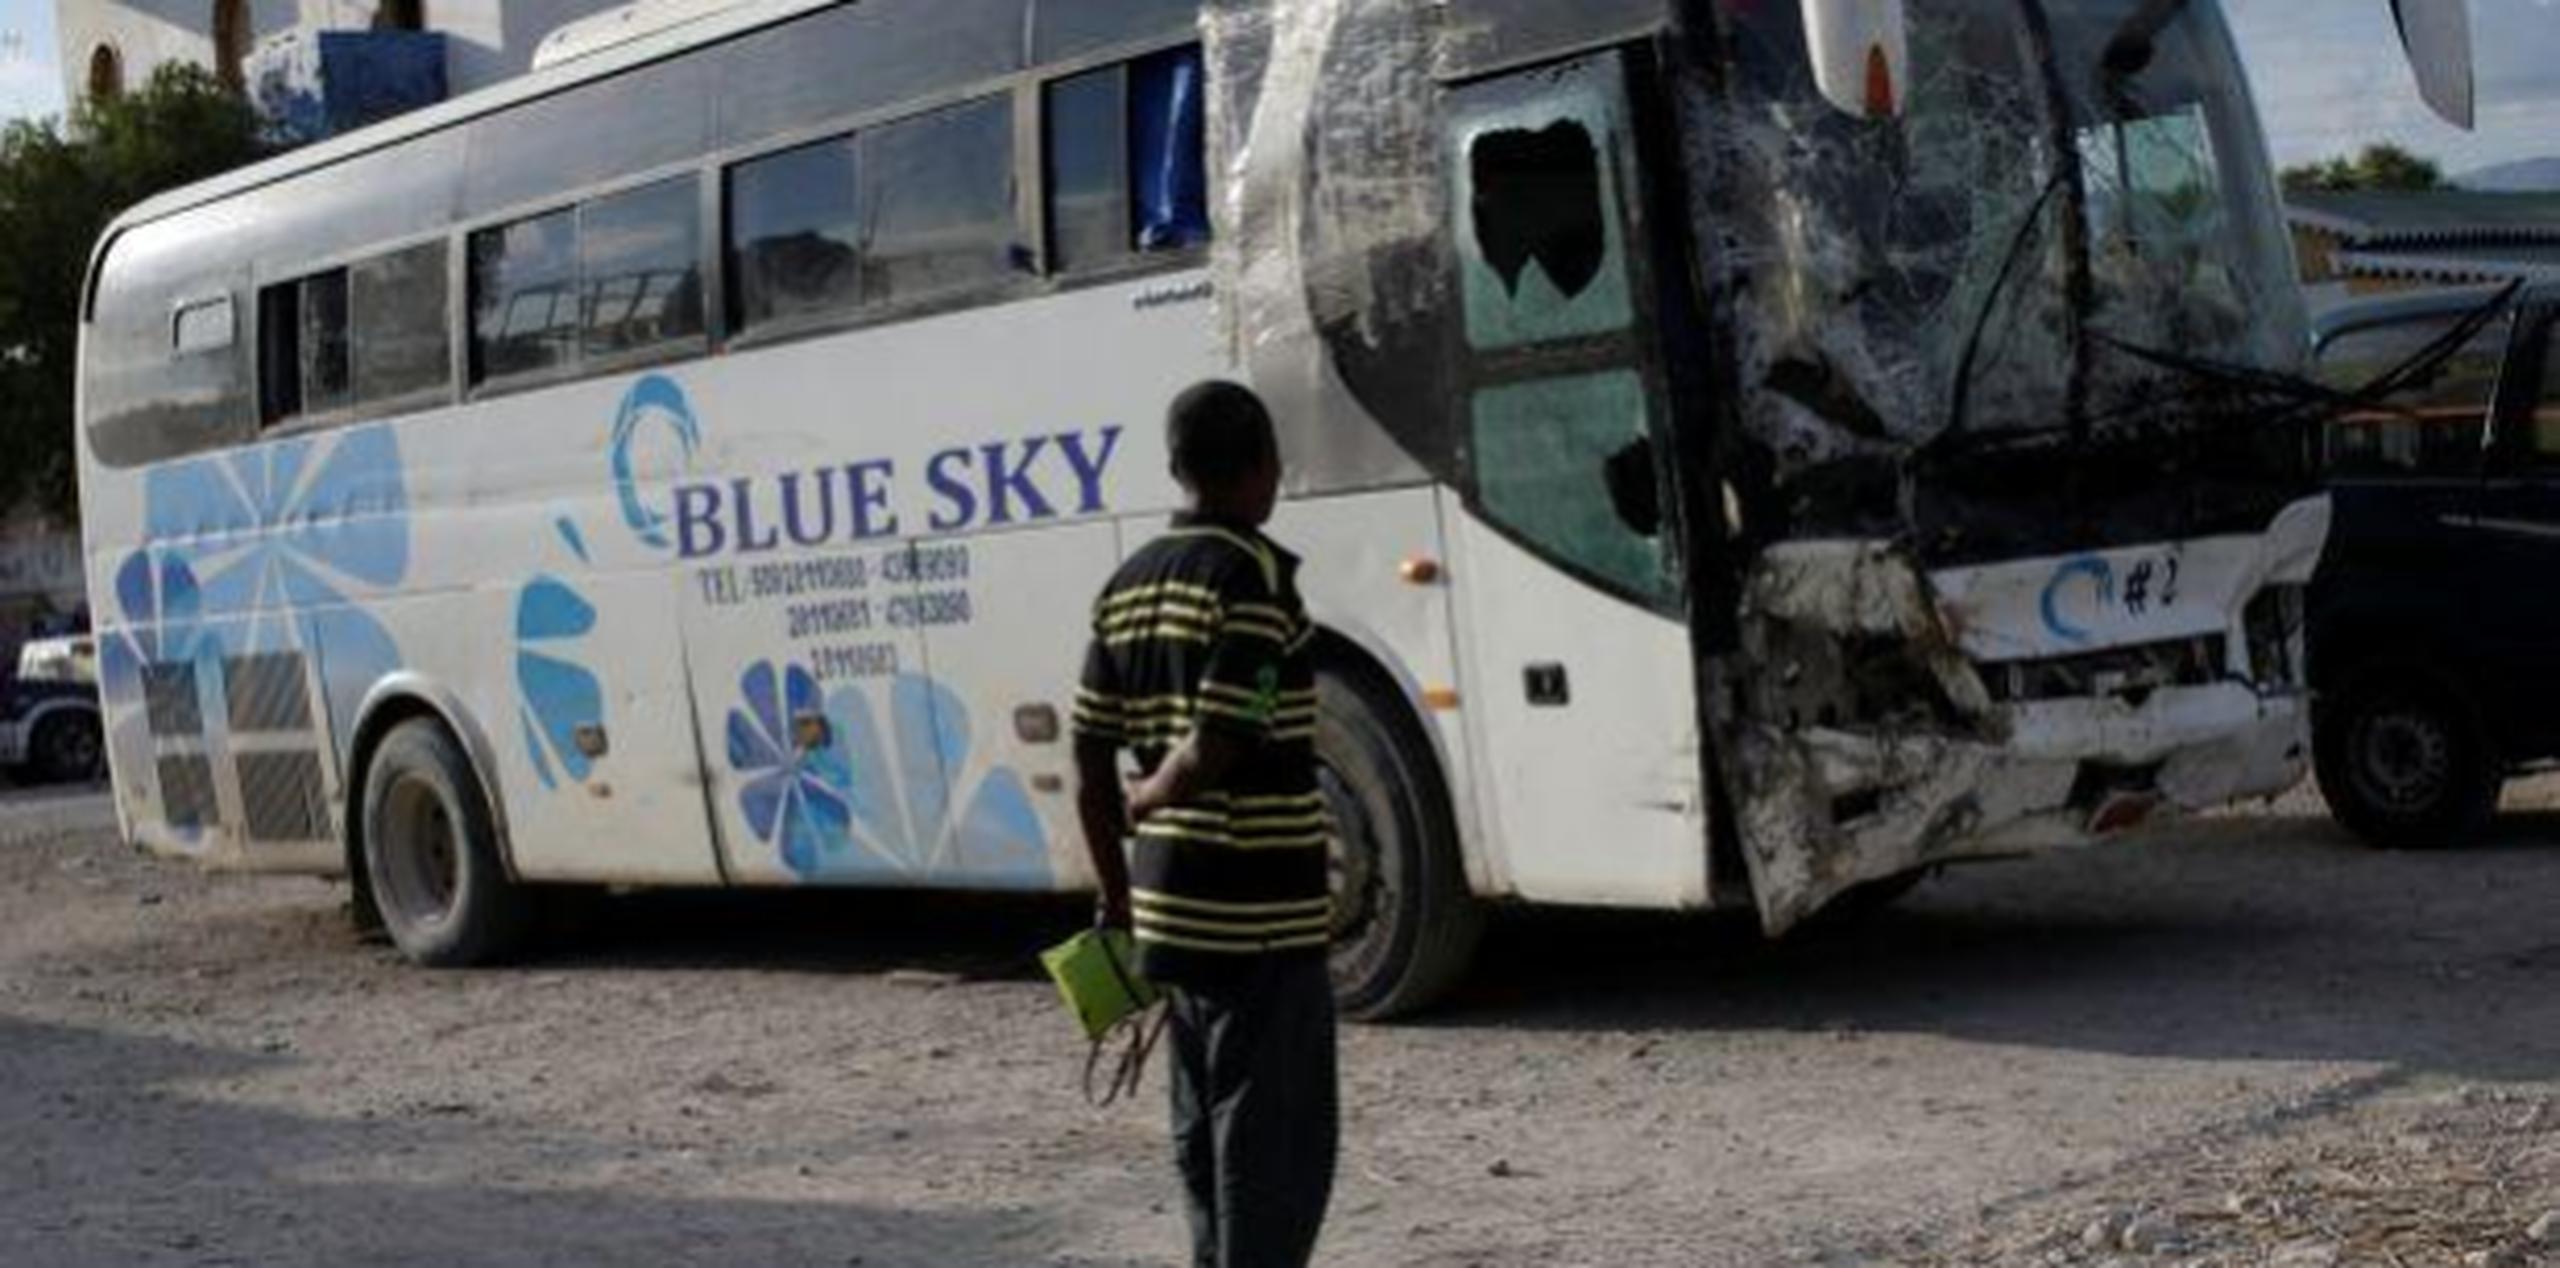 La línea de autobuses Blue Sky, es una opción más lujosa para los viajeros comparada con los viejos autobuses escolares estadounidenses que son utilizados comúnmente en Haití. (GDA)